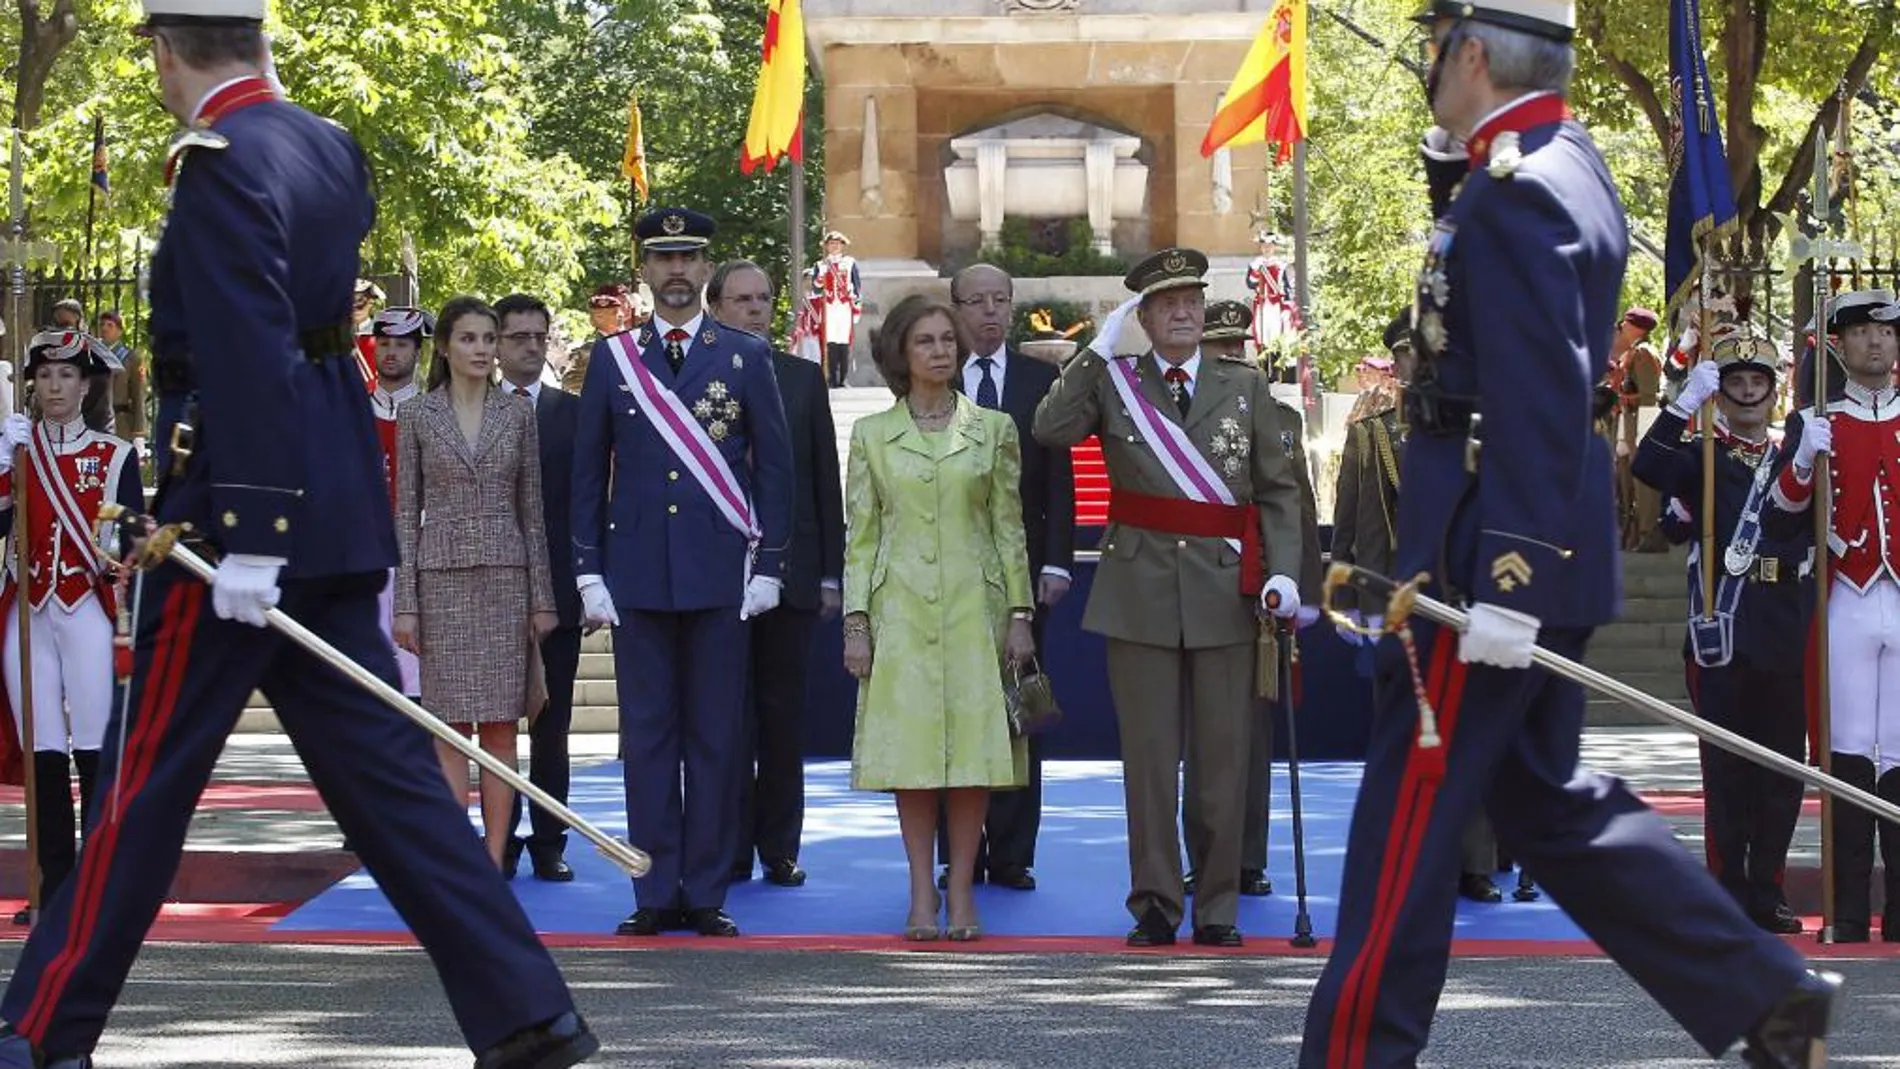 Los Reyes, acompañados por los Príncipes de Asturias, presiden el acto de homenaje a los que dieron su vida por España, organizado por el Ministerio de Defensa en el marco del Día de las Fuerzas Armadas, hoy en la plaza de la Lealtad de Madrid